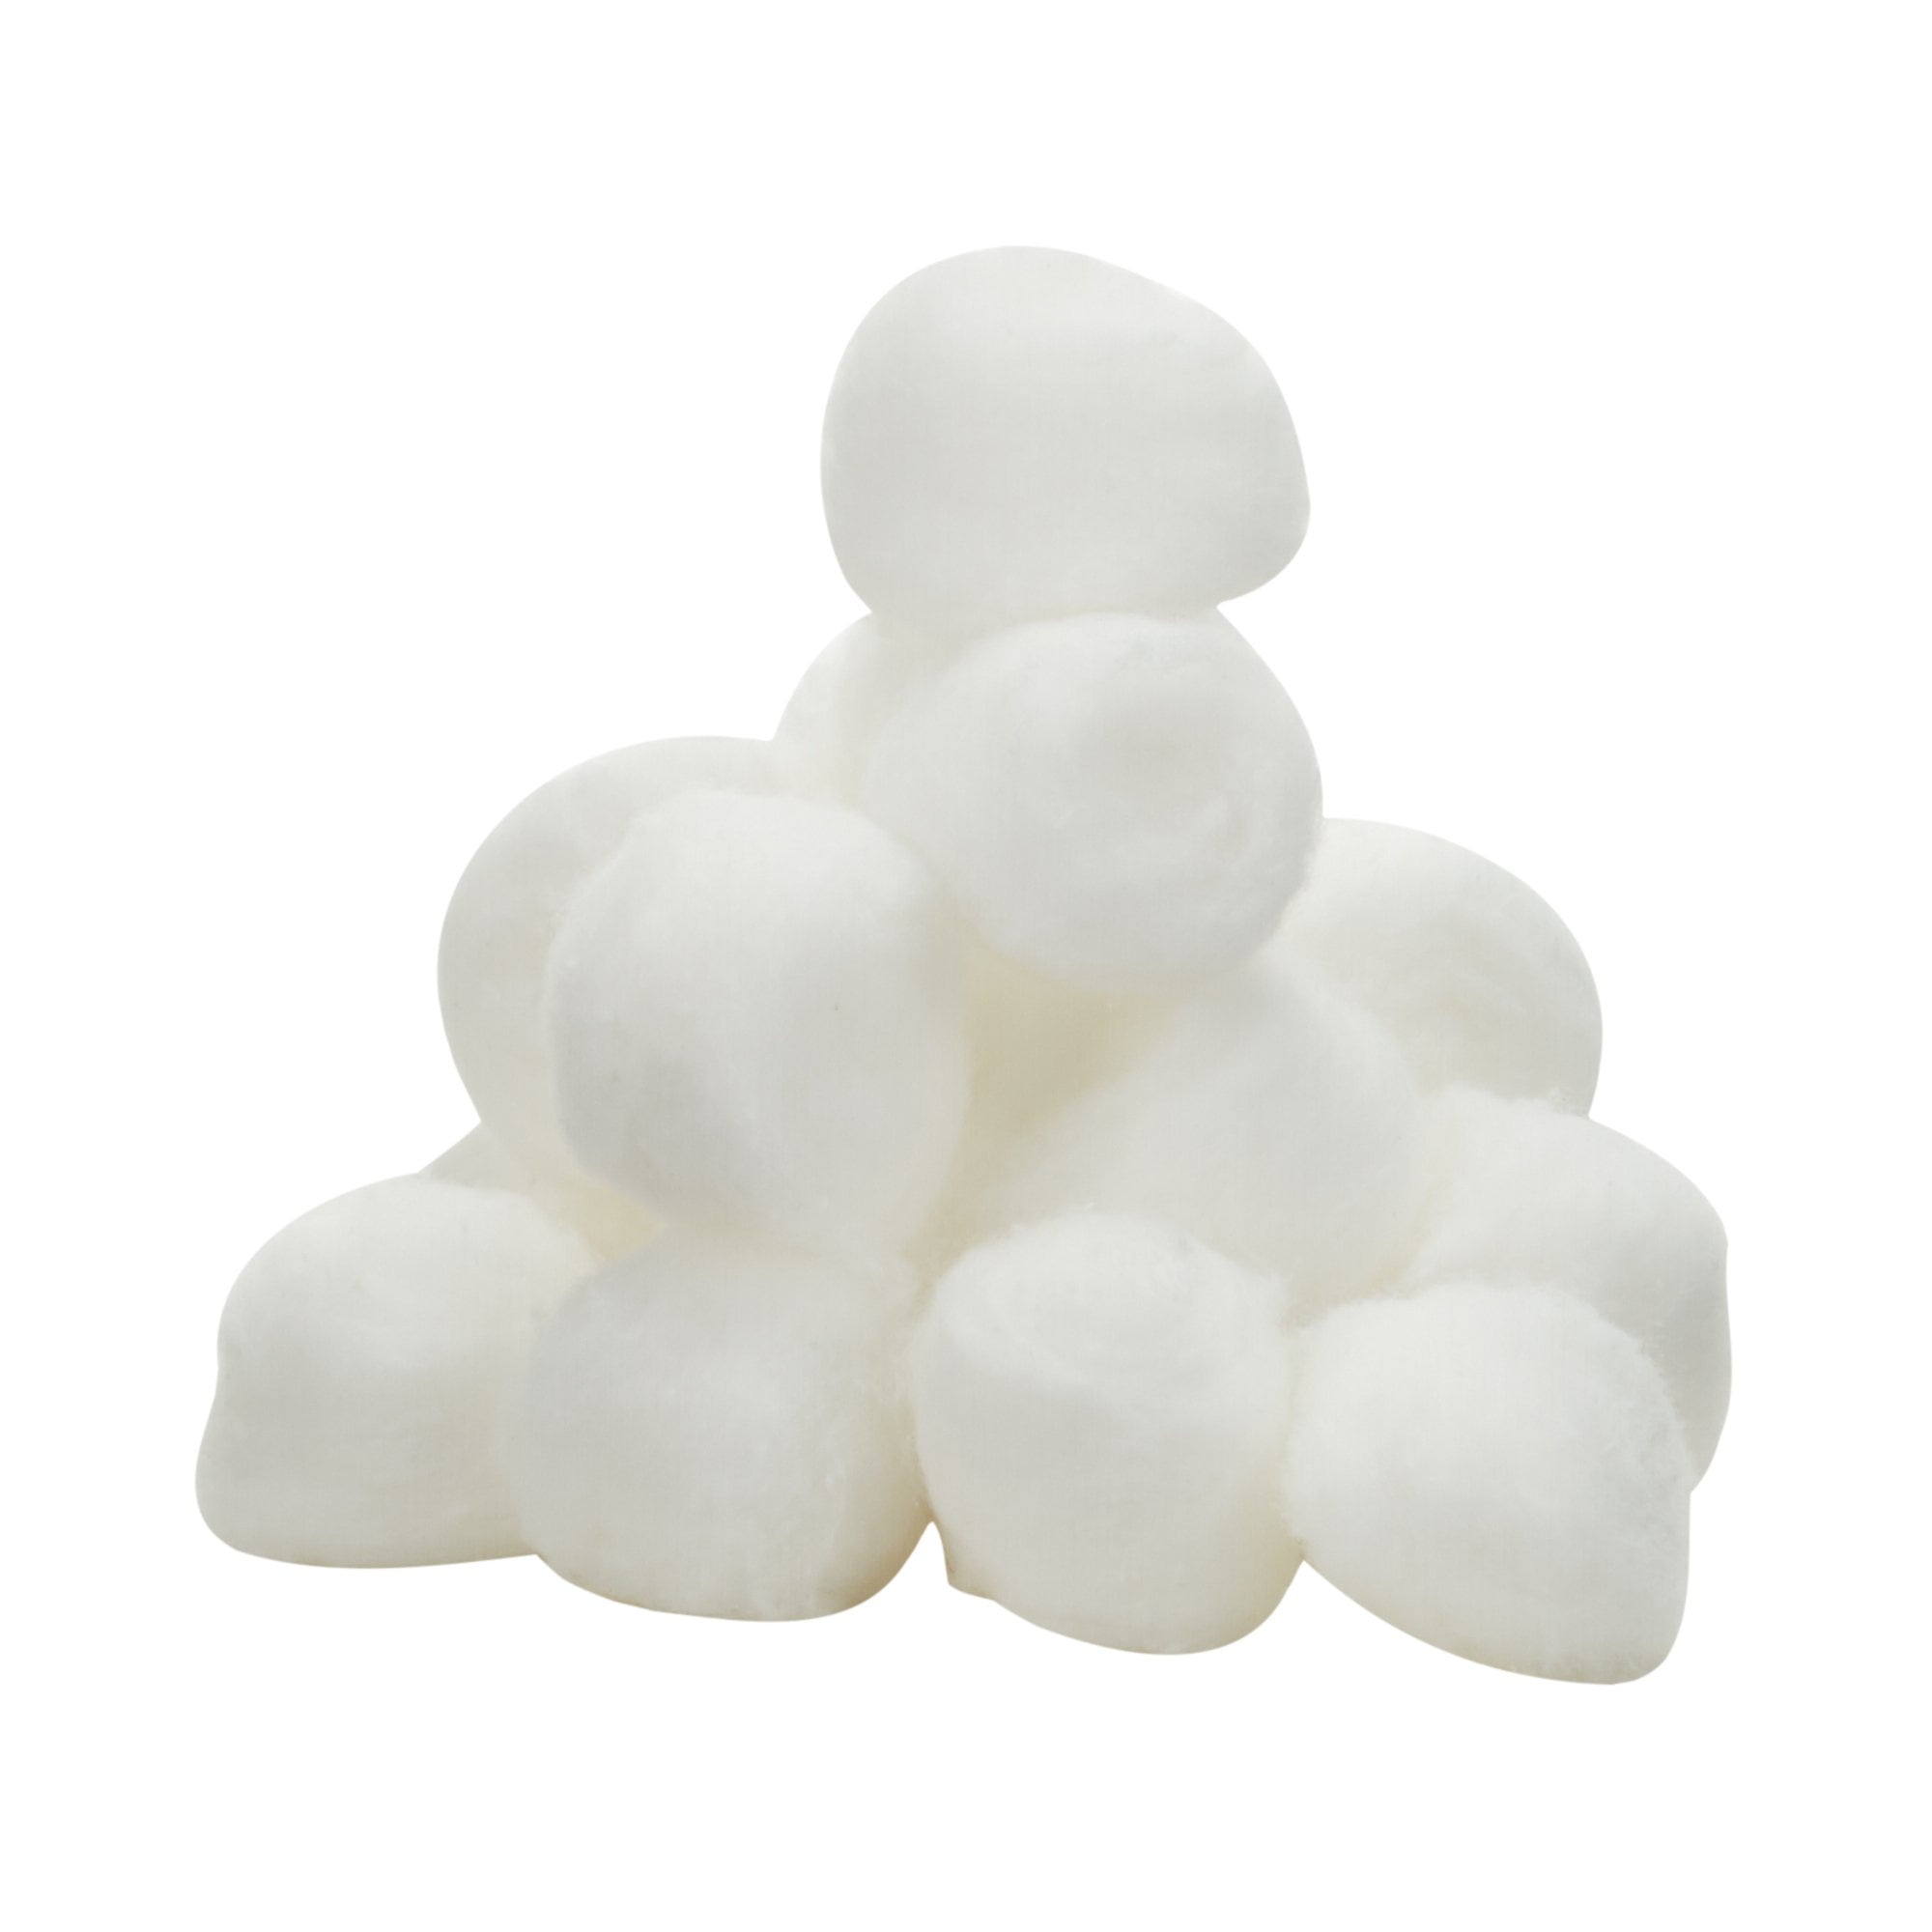 H-E-B Triple Size Cotton Balls, 100-ct